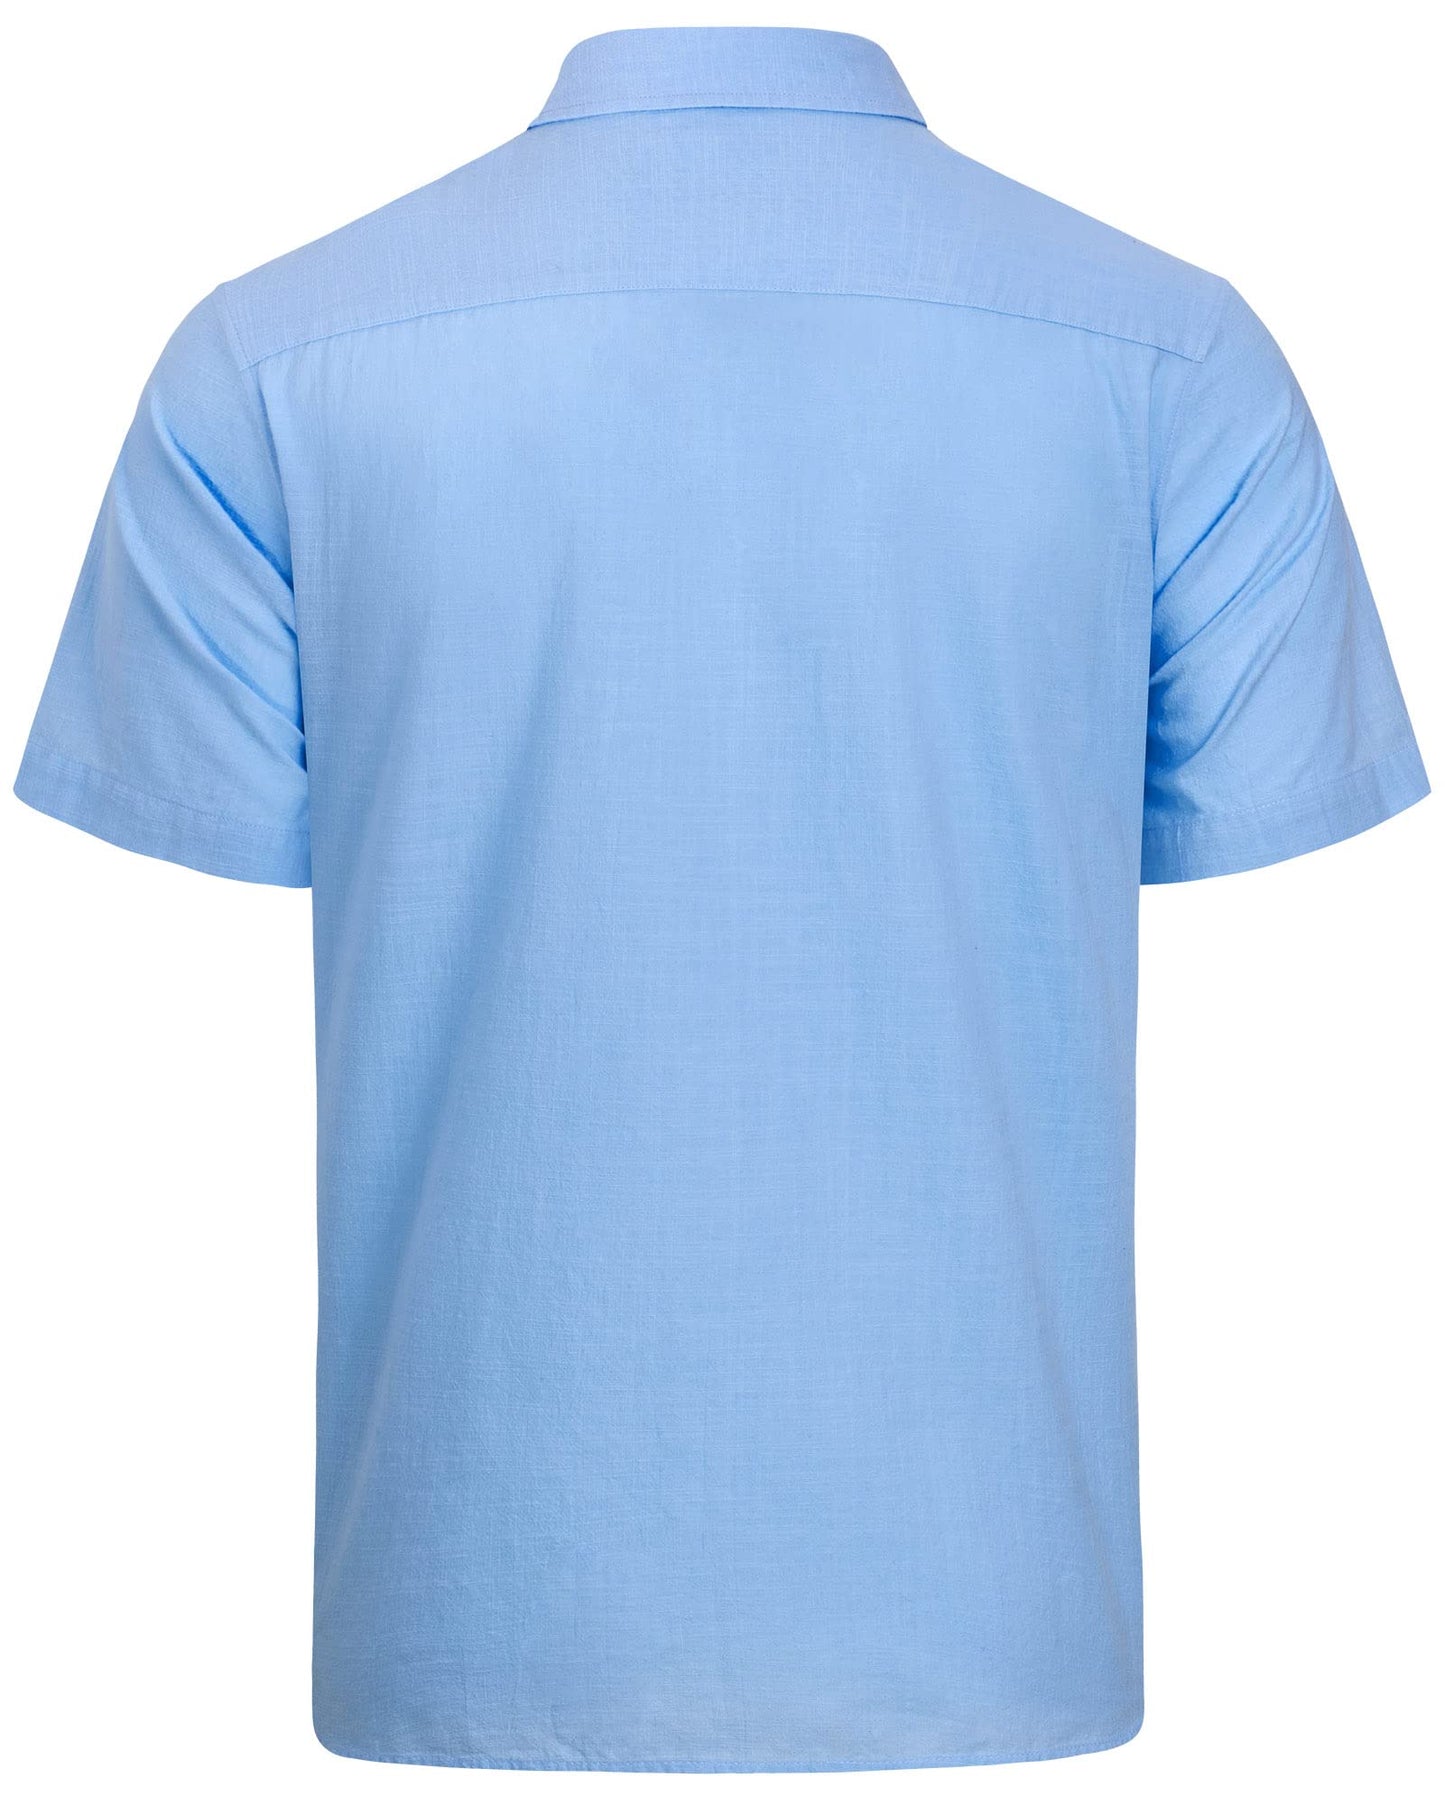 J.VER Men's Short Sleeve Linen Cotton Shirts Casual Button Down Shirt Summer Beach Tops with Pocket Light Blue X-Large